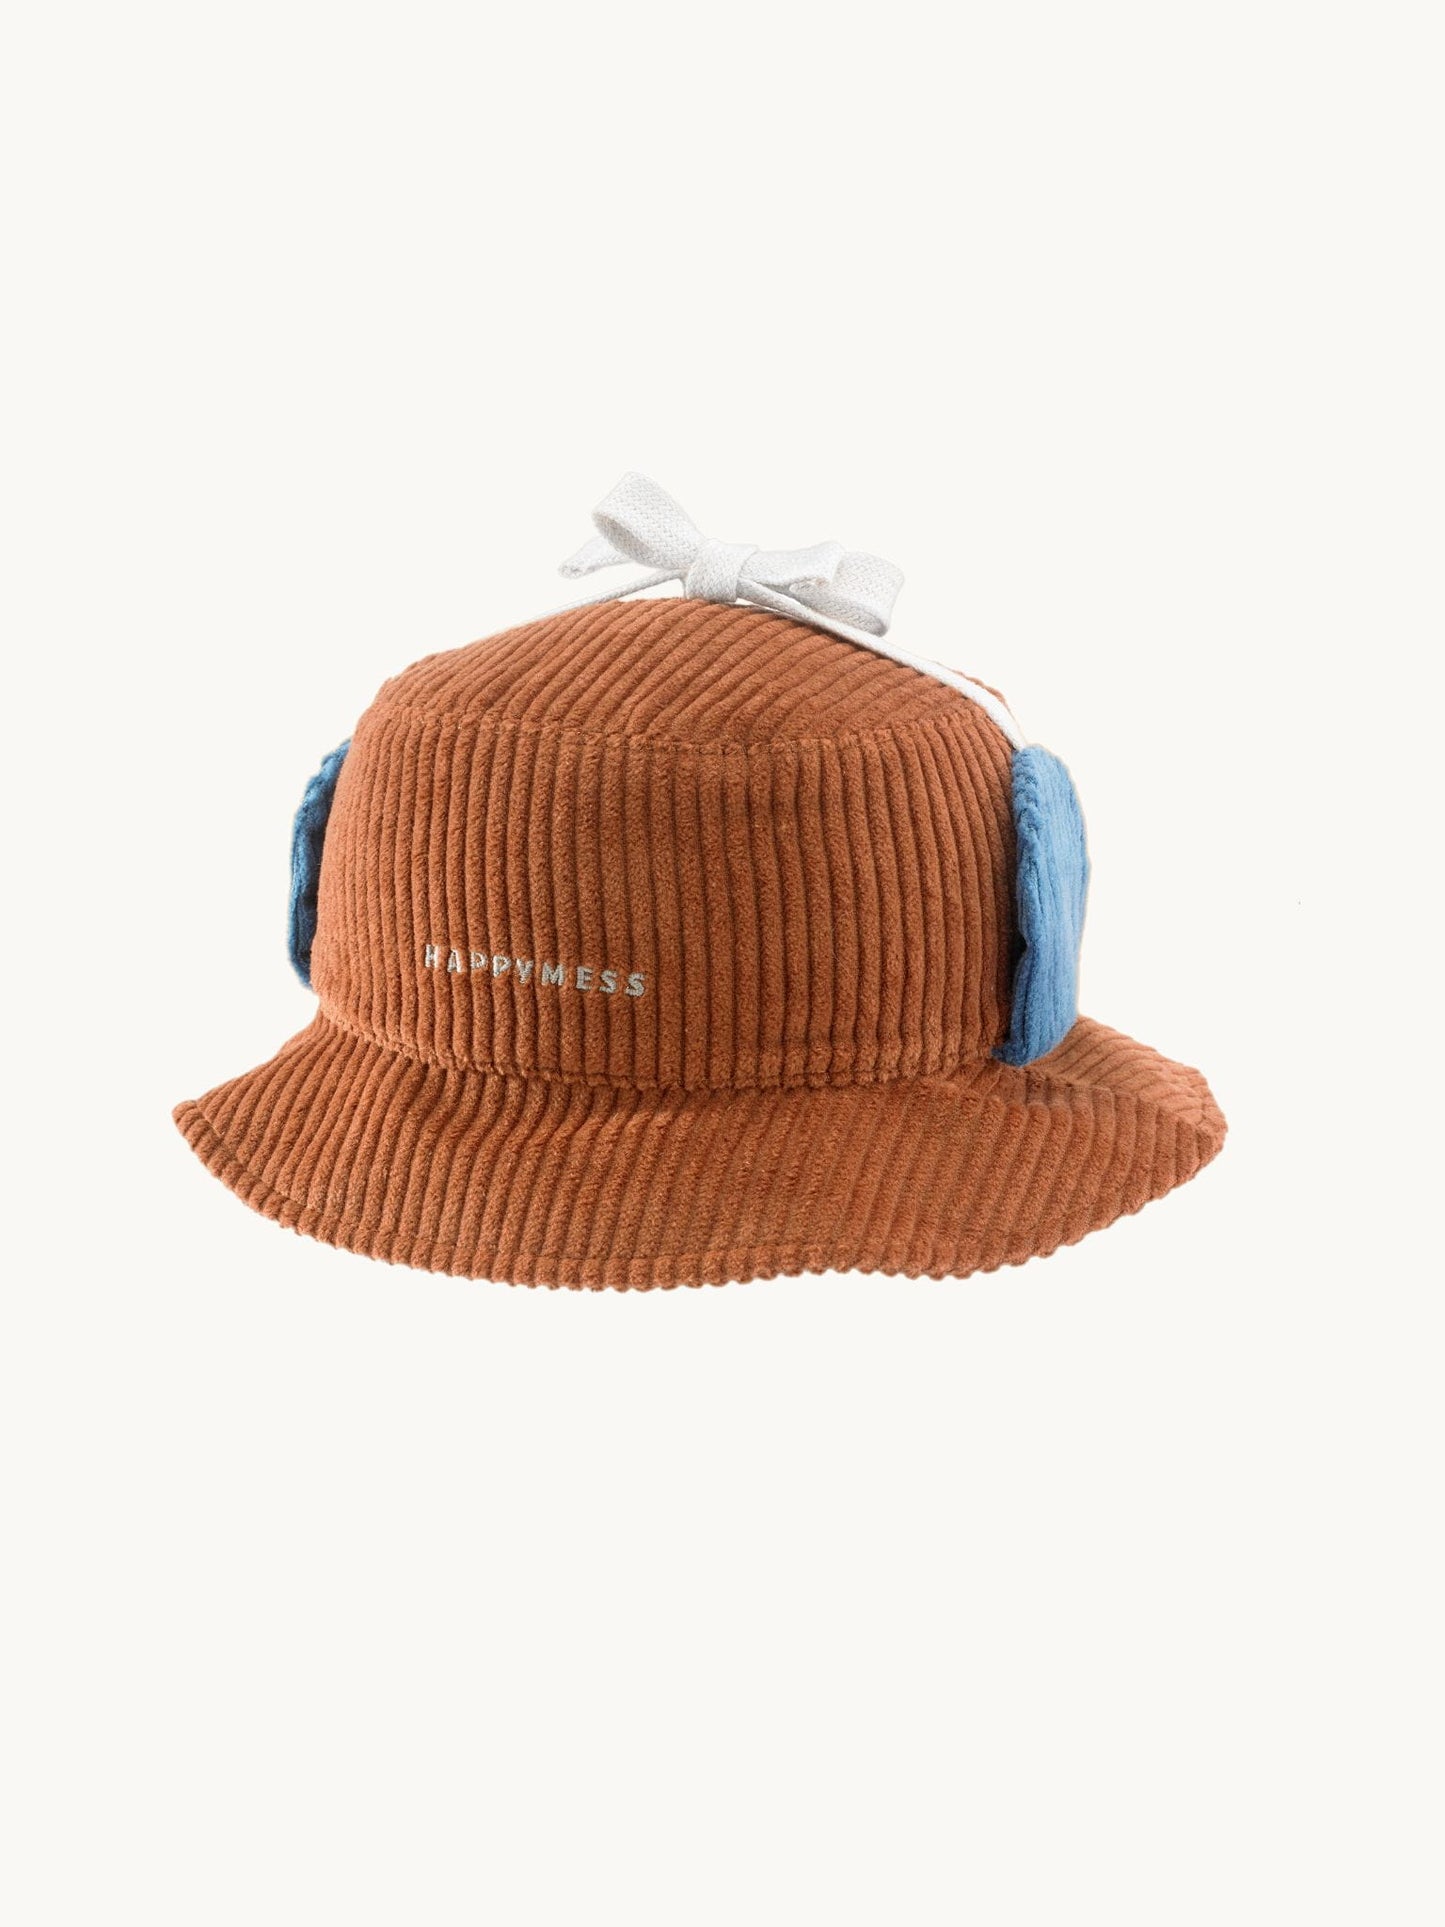 Corduroy Bucket Hat, Happymess